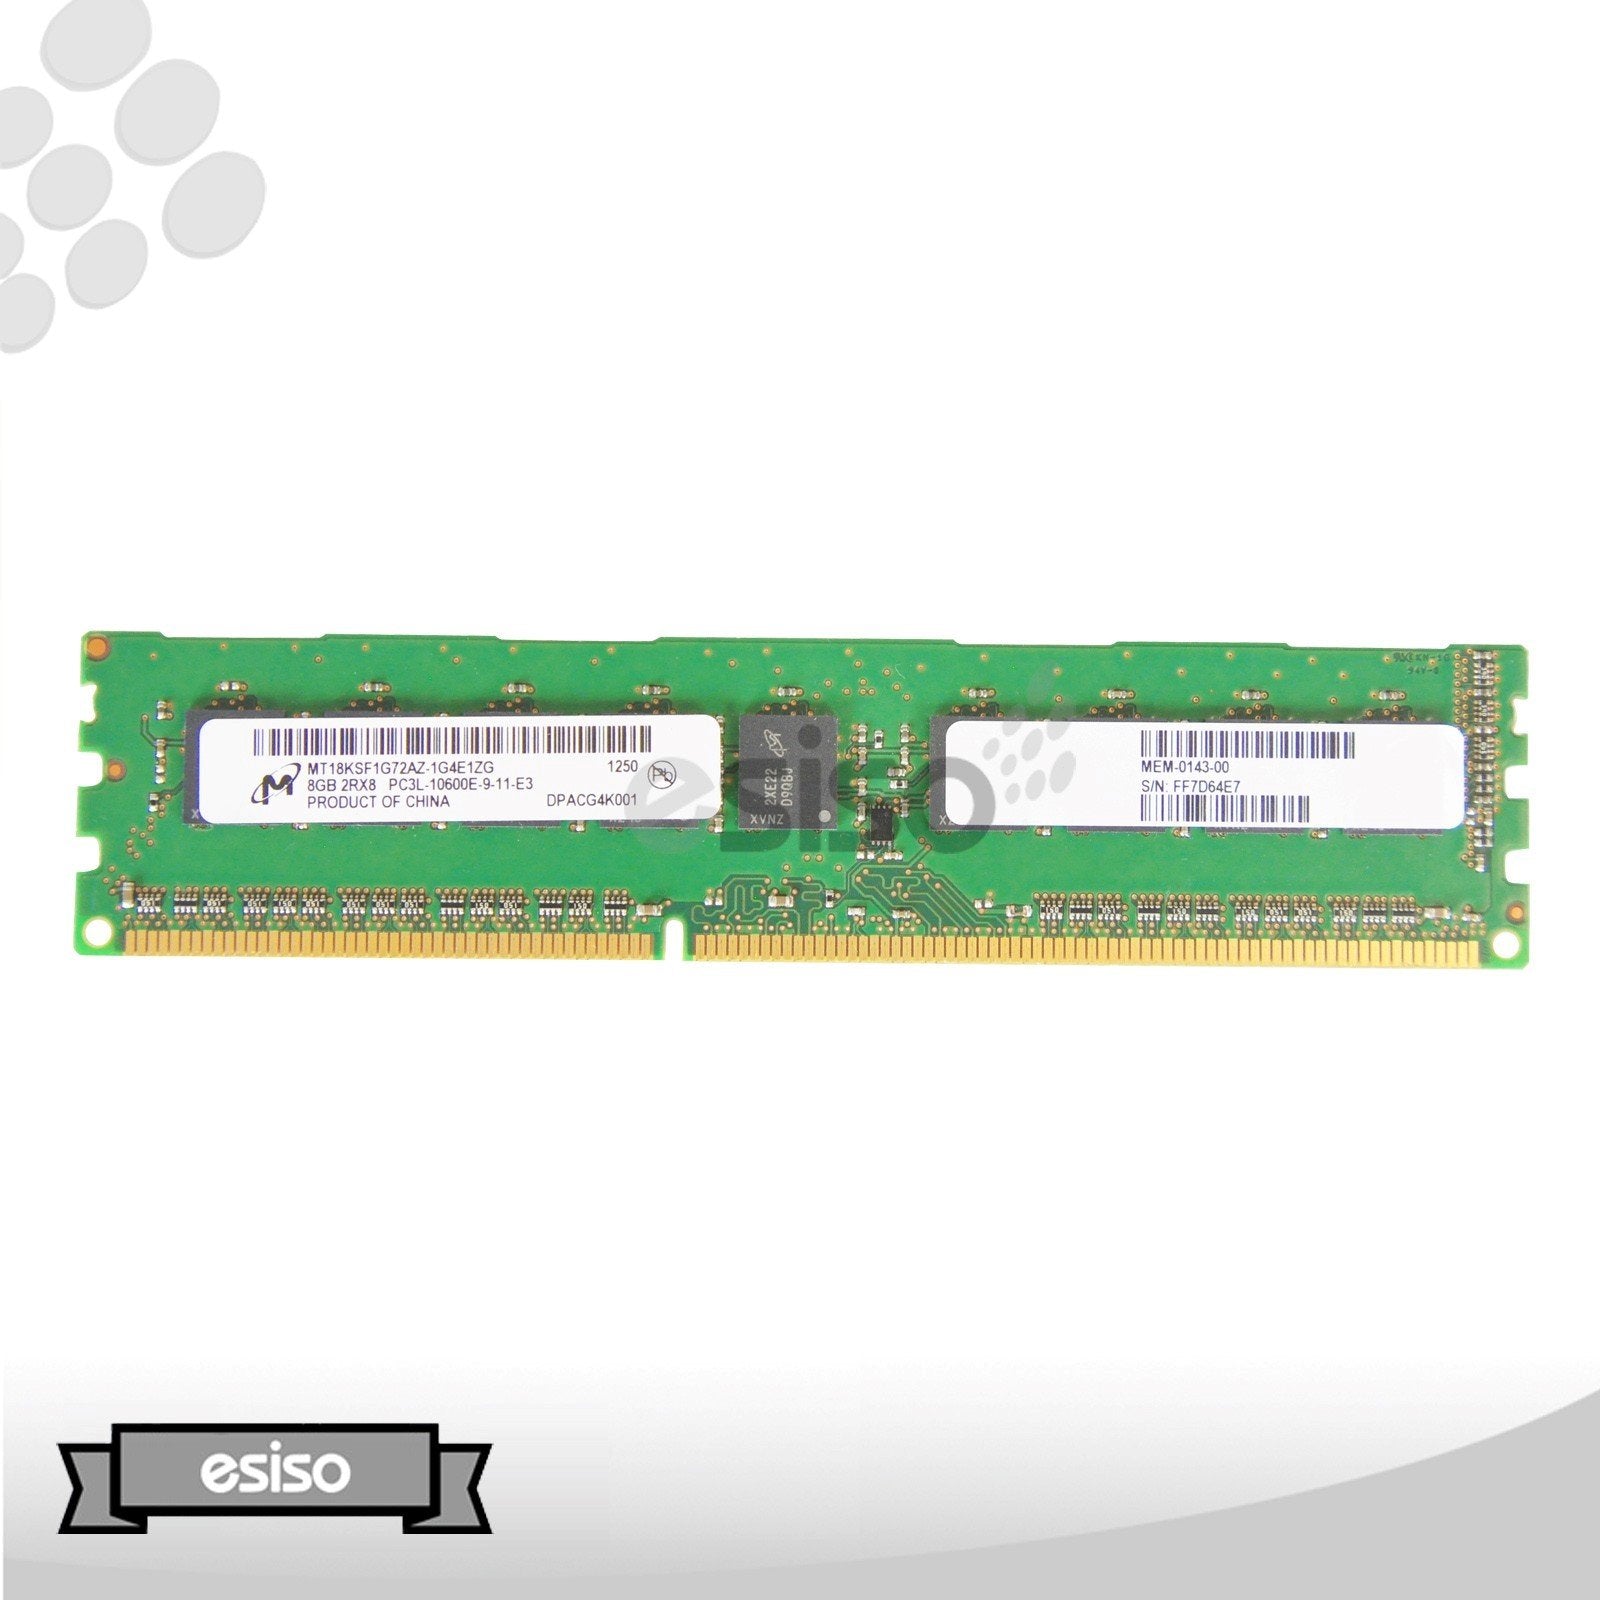 MT18KSF1G72AZ-1G4 MICRON 8GB 2RX8 PC3L-10600E DDR3 MEMORY MODULE (1X8GB)